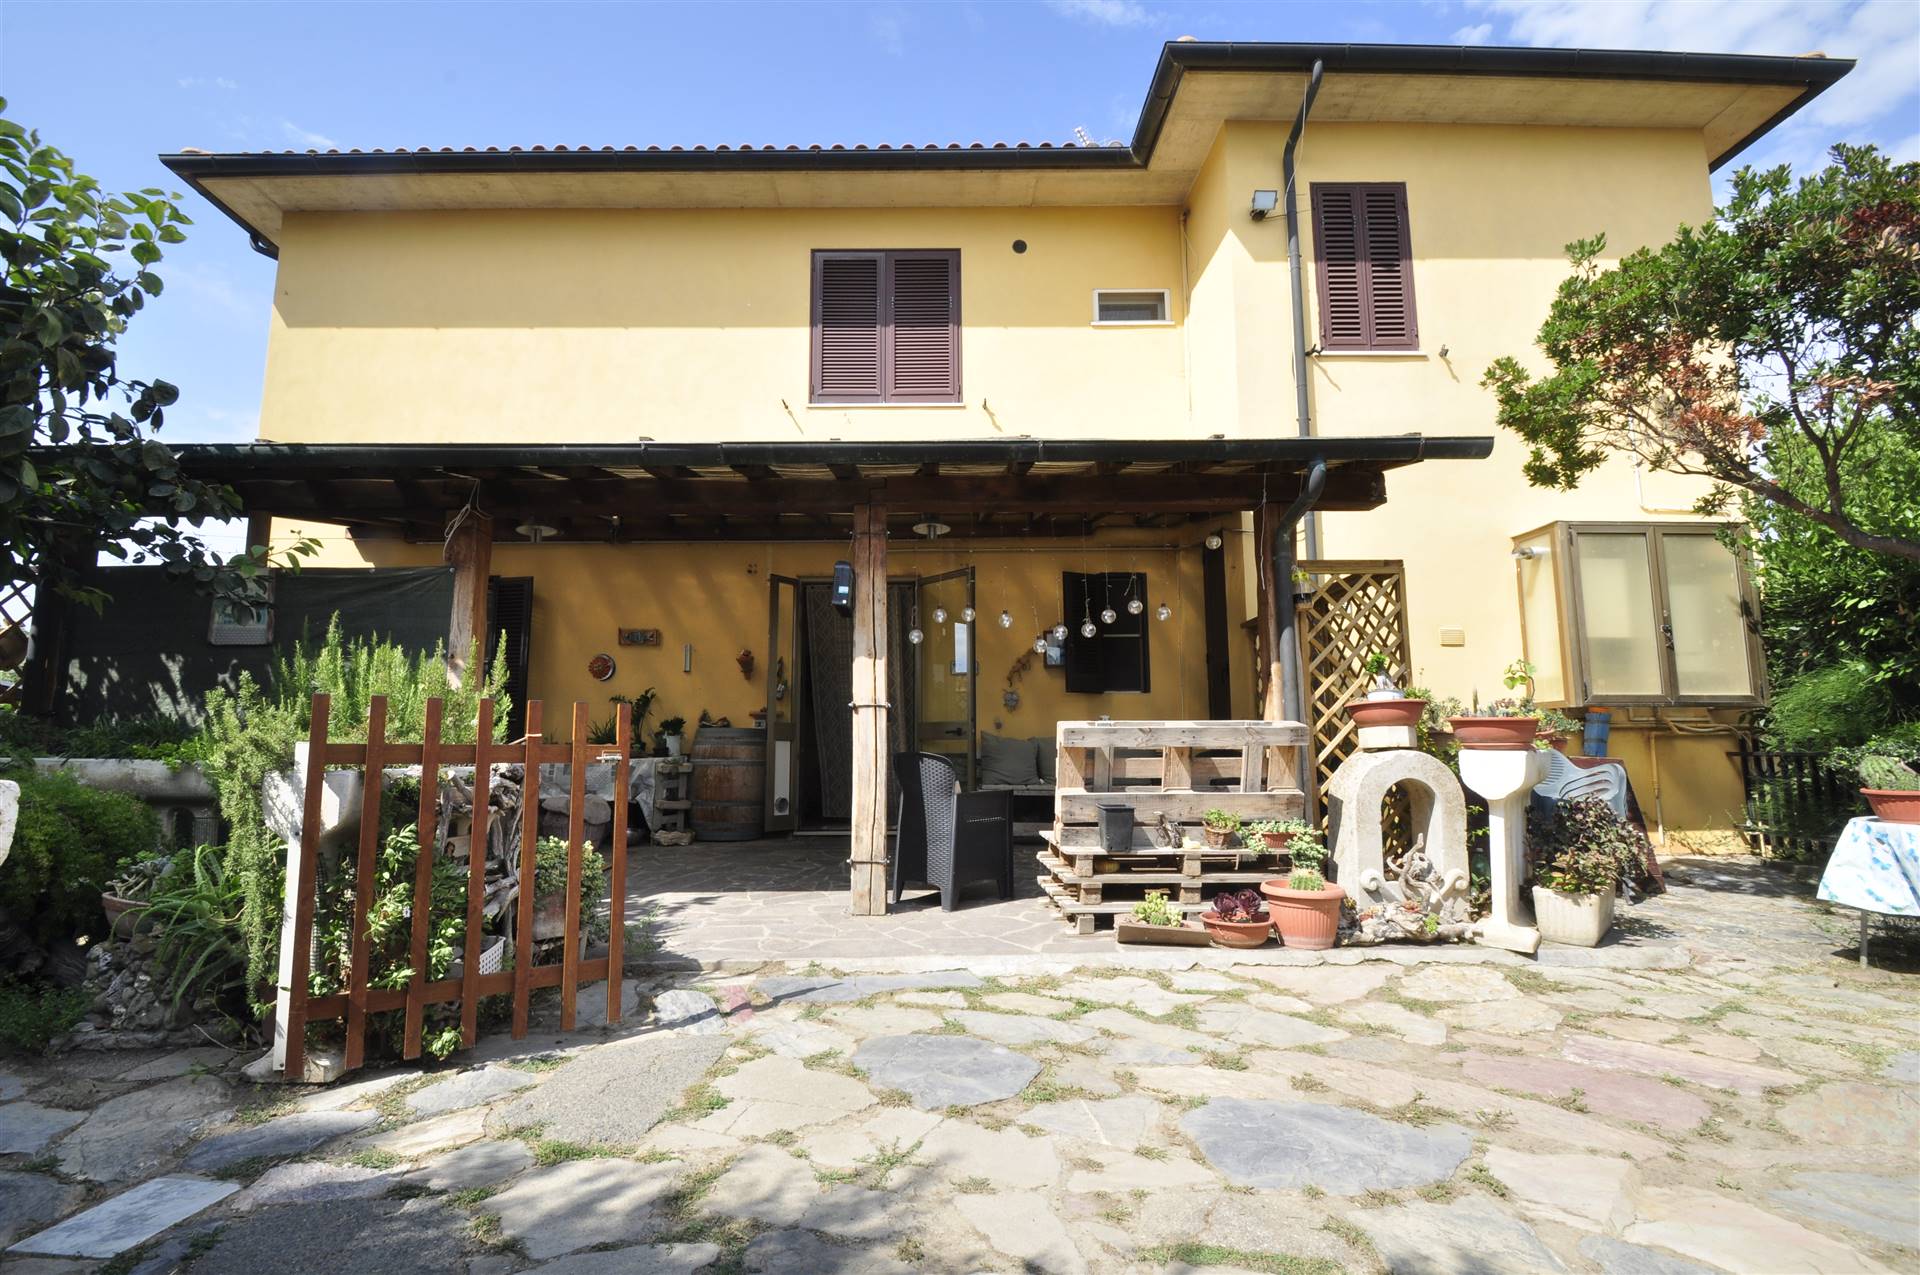 Appartamento in vendita a Piombino, 4 locali, prezzo € 220.000 | PortaleAgenzieImmobiliari.it